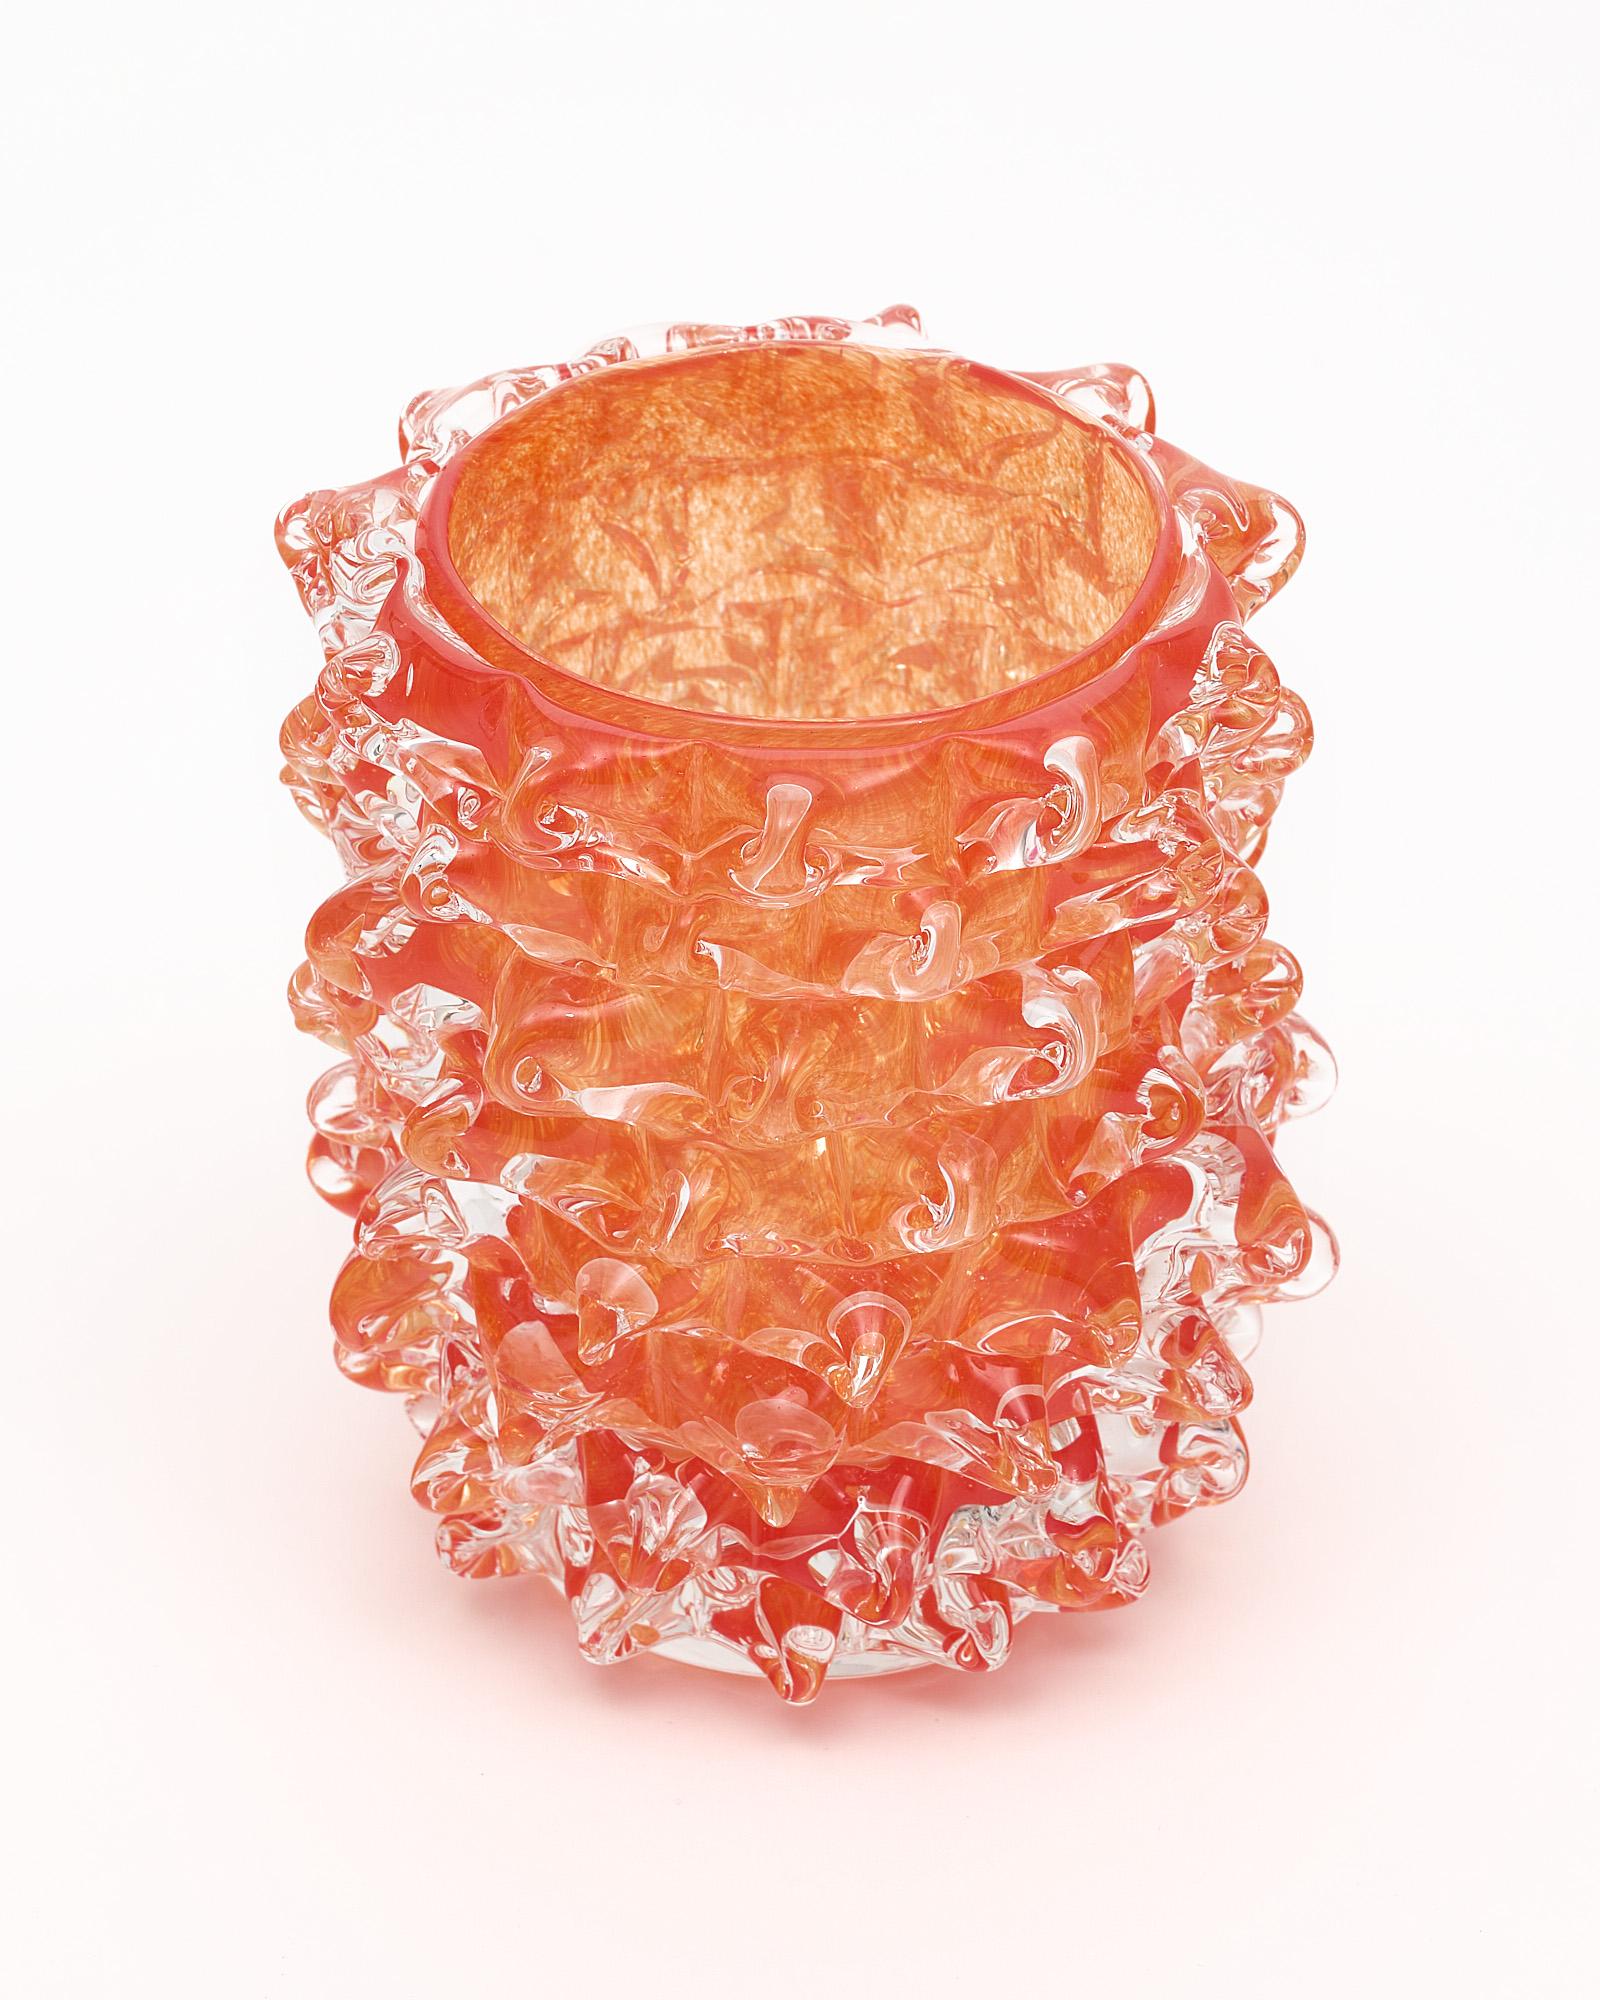 Vase en verre de Murano, italien, provenant de l'île de Murano et fabriqué à la manière de Barovier. Cette pièce soufflée à la main a une couleur orange frappante et est fabriquée selon la technique du 